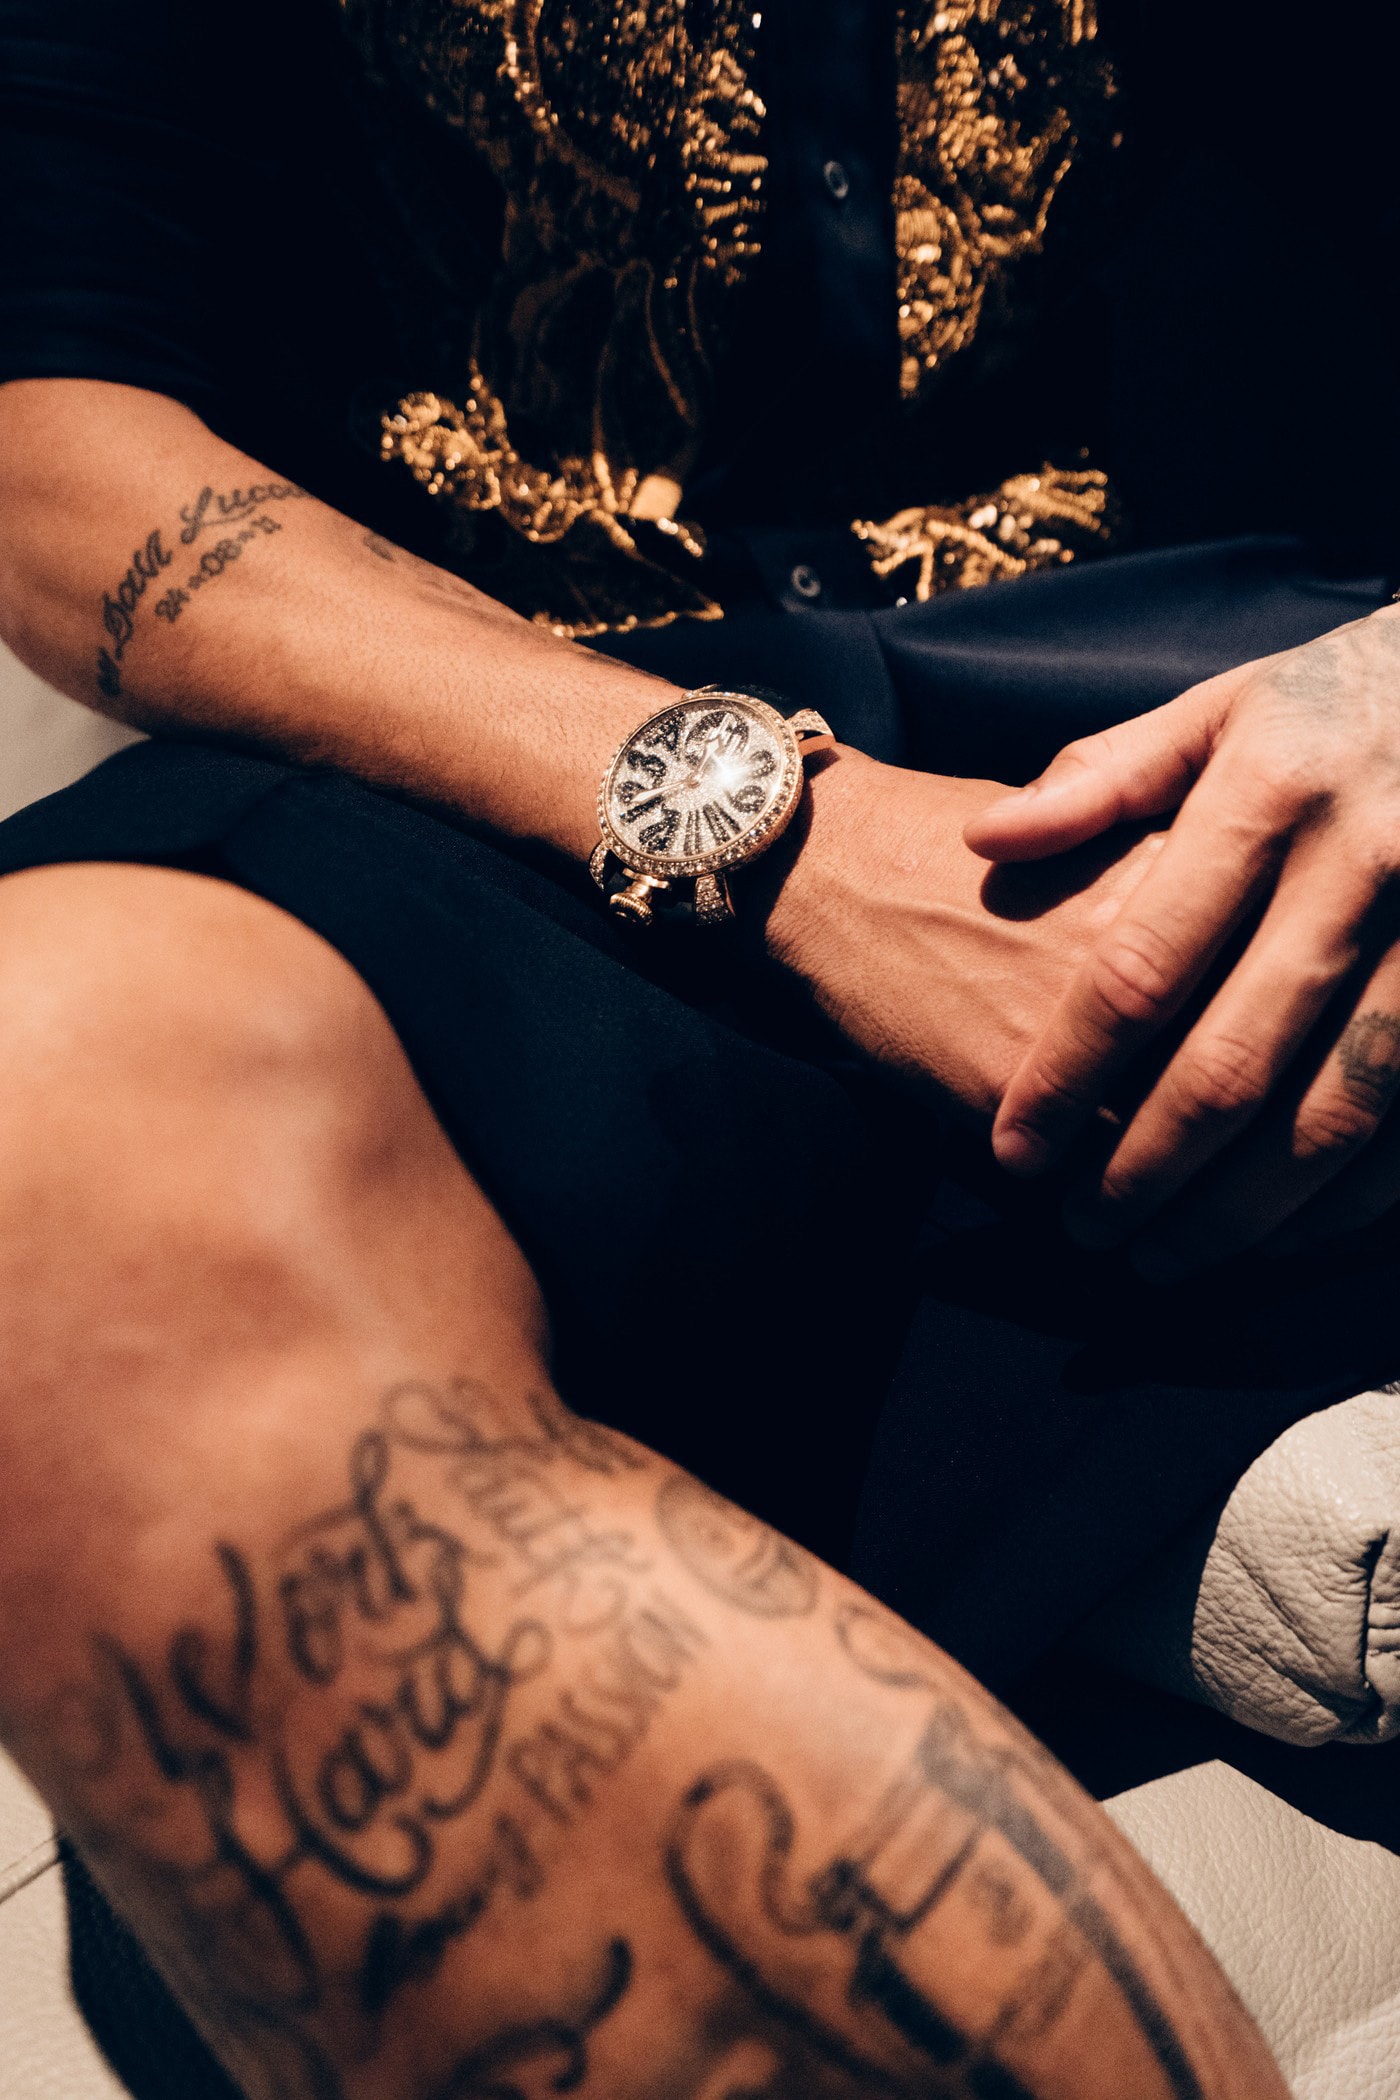 neymar back tattoo